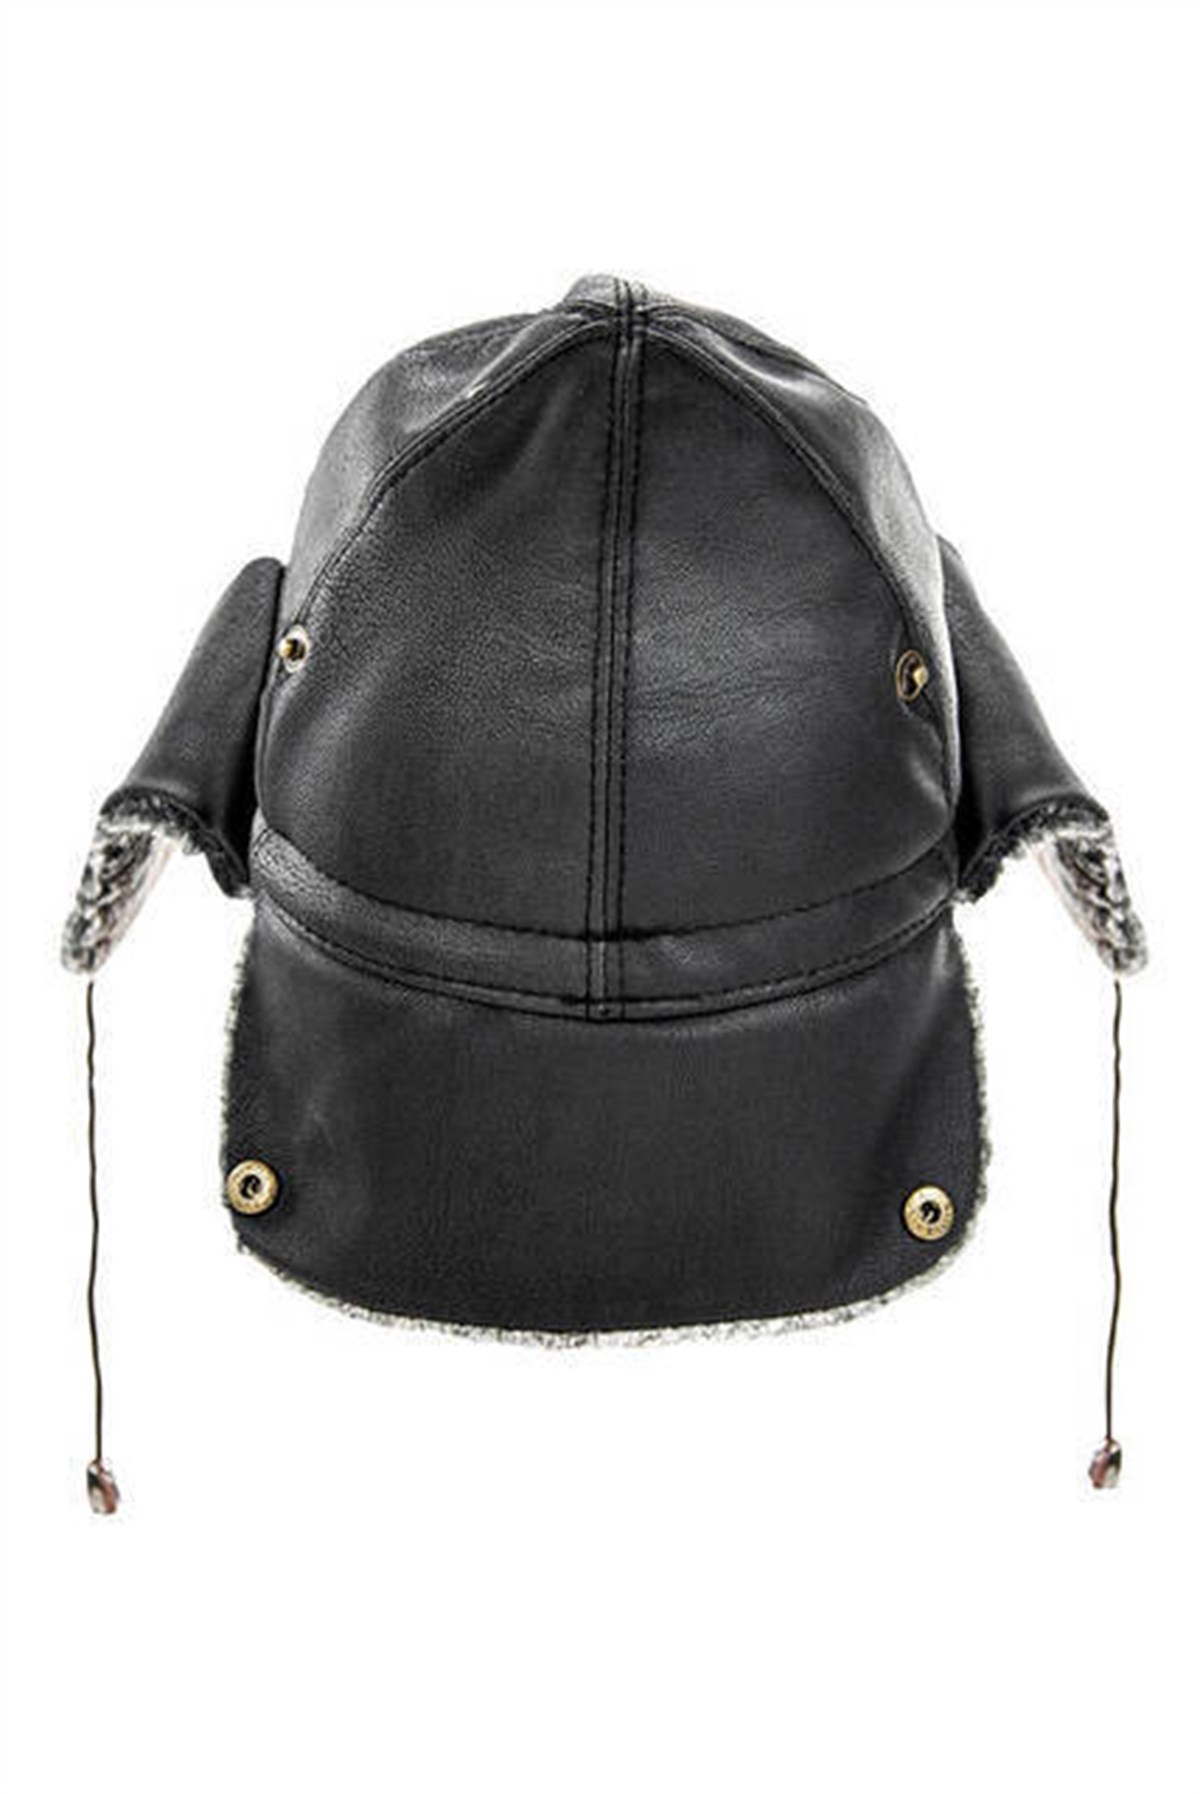 Deri Şapka - Kulaklıklı Şapka - Siyah Renk | Minber